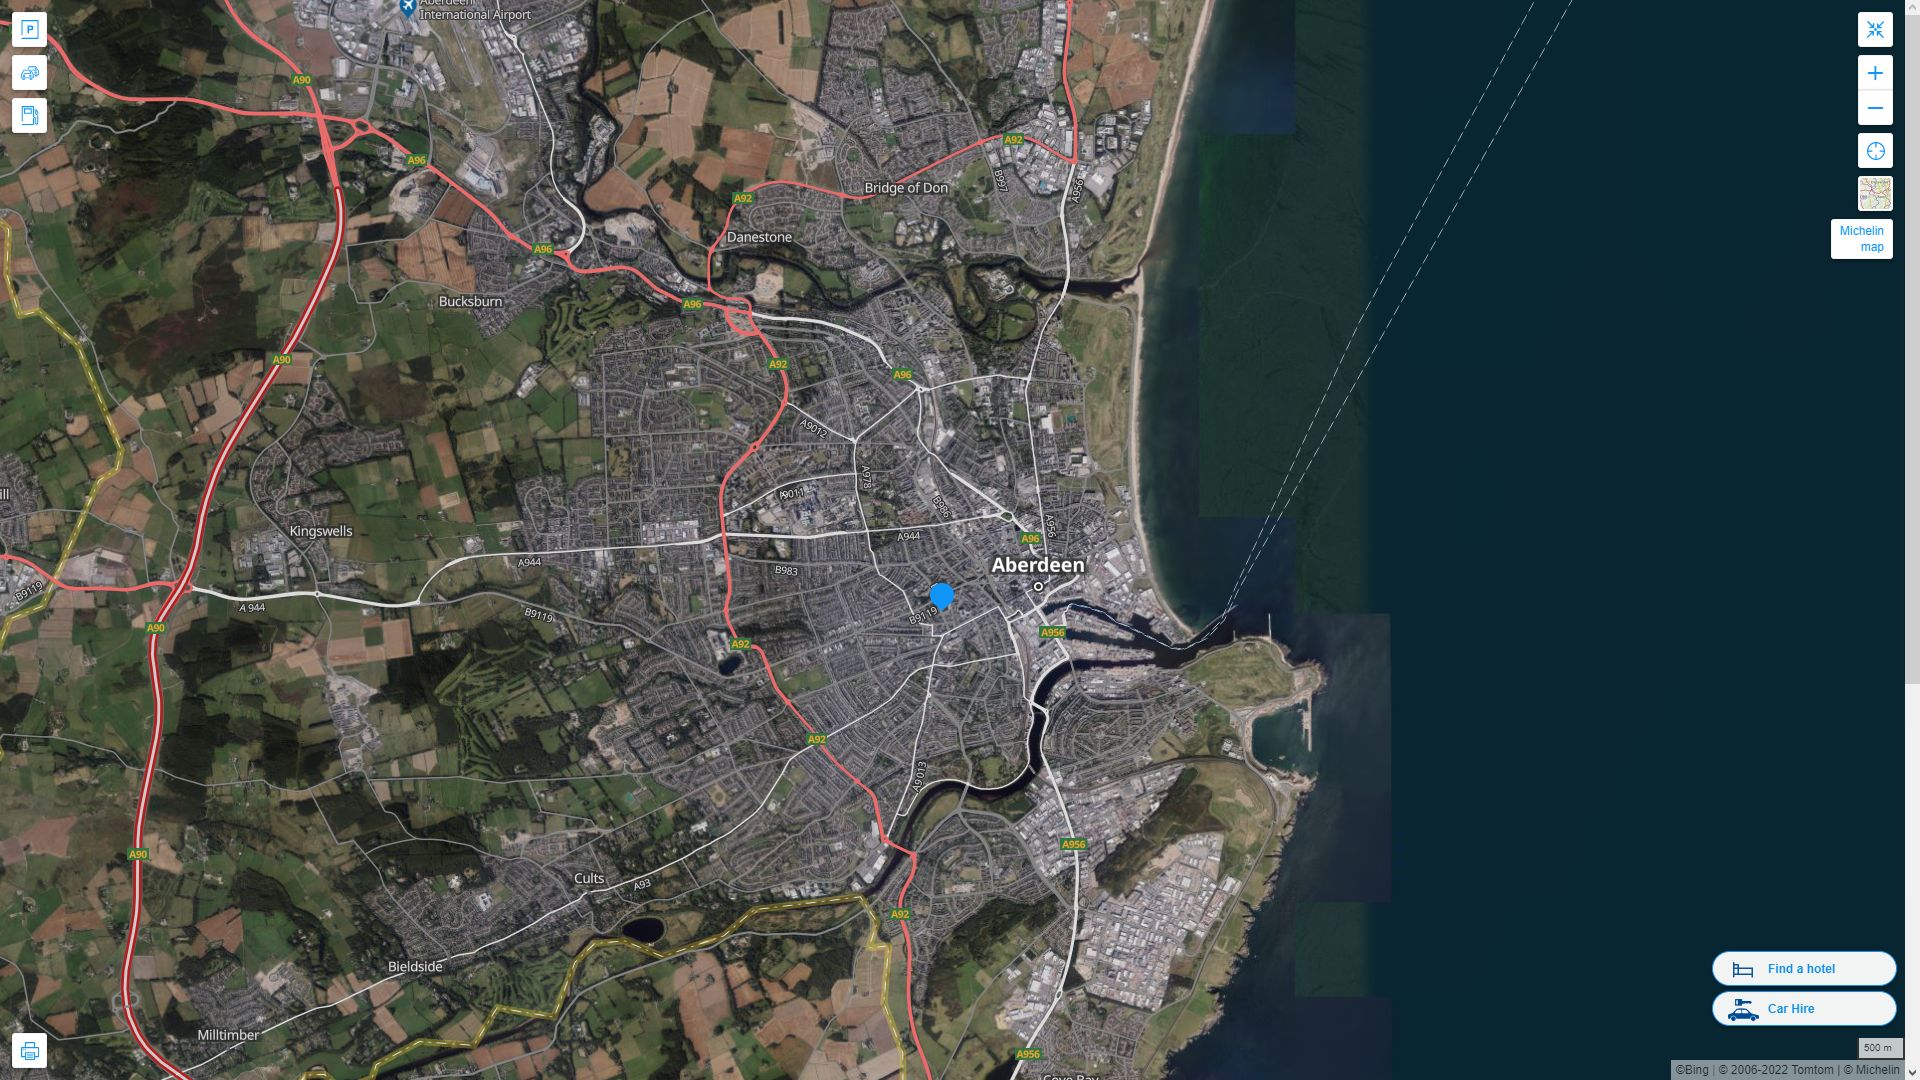 Aberdeen Royaume Uni Autoroute et carte routiere avec vue satellite